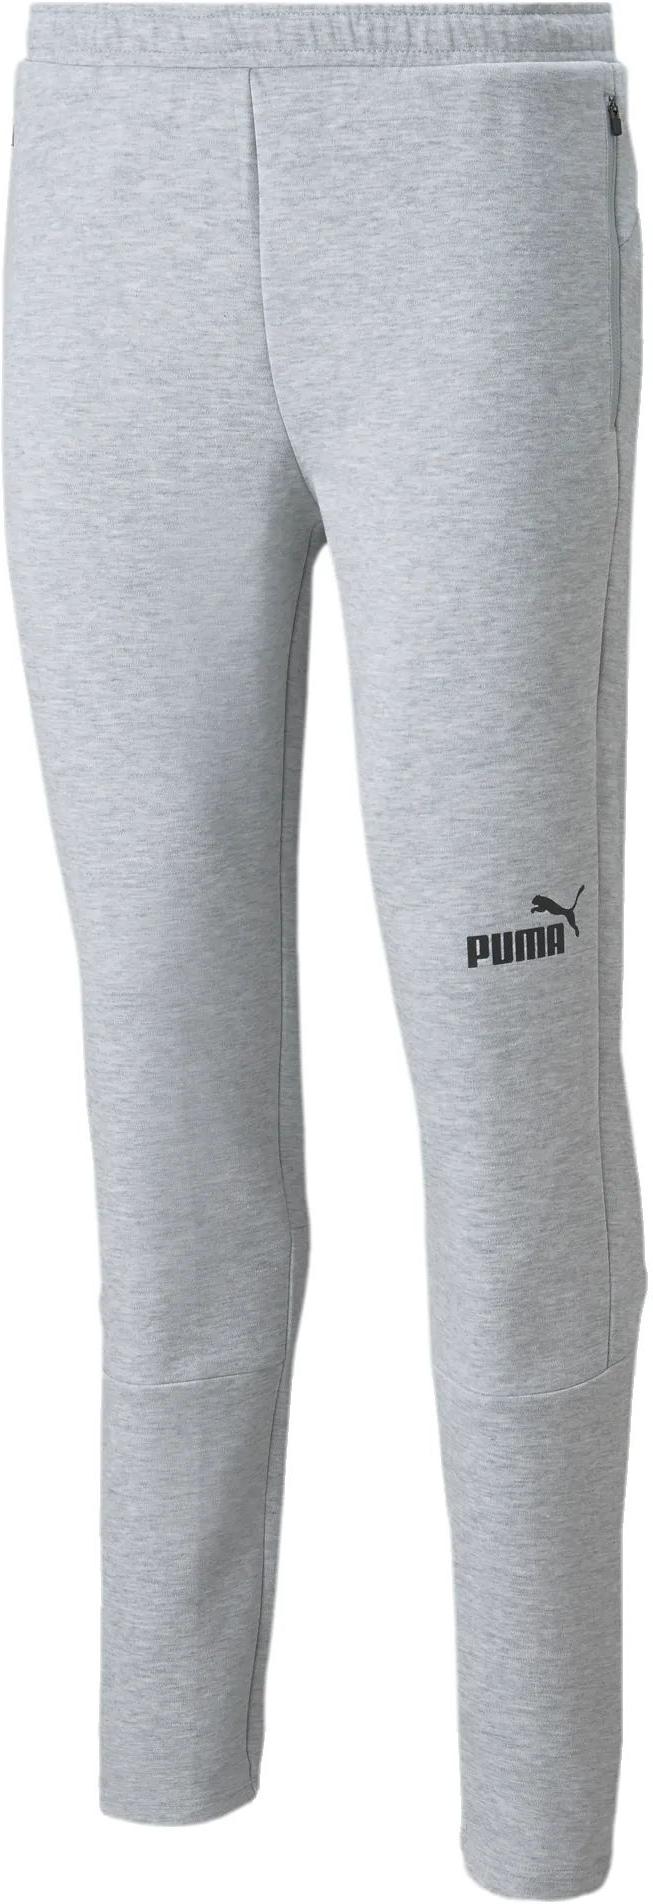 Pantalón Puma teamFINAL Casuals Pants